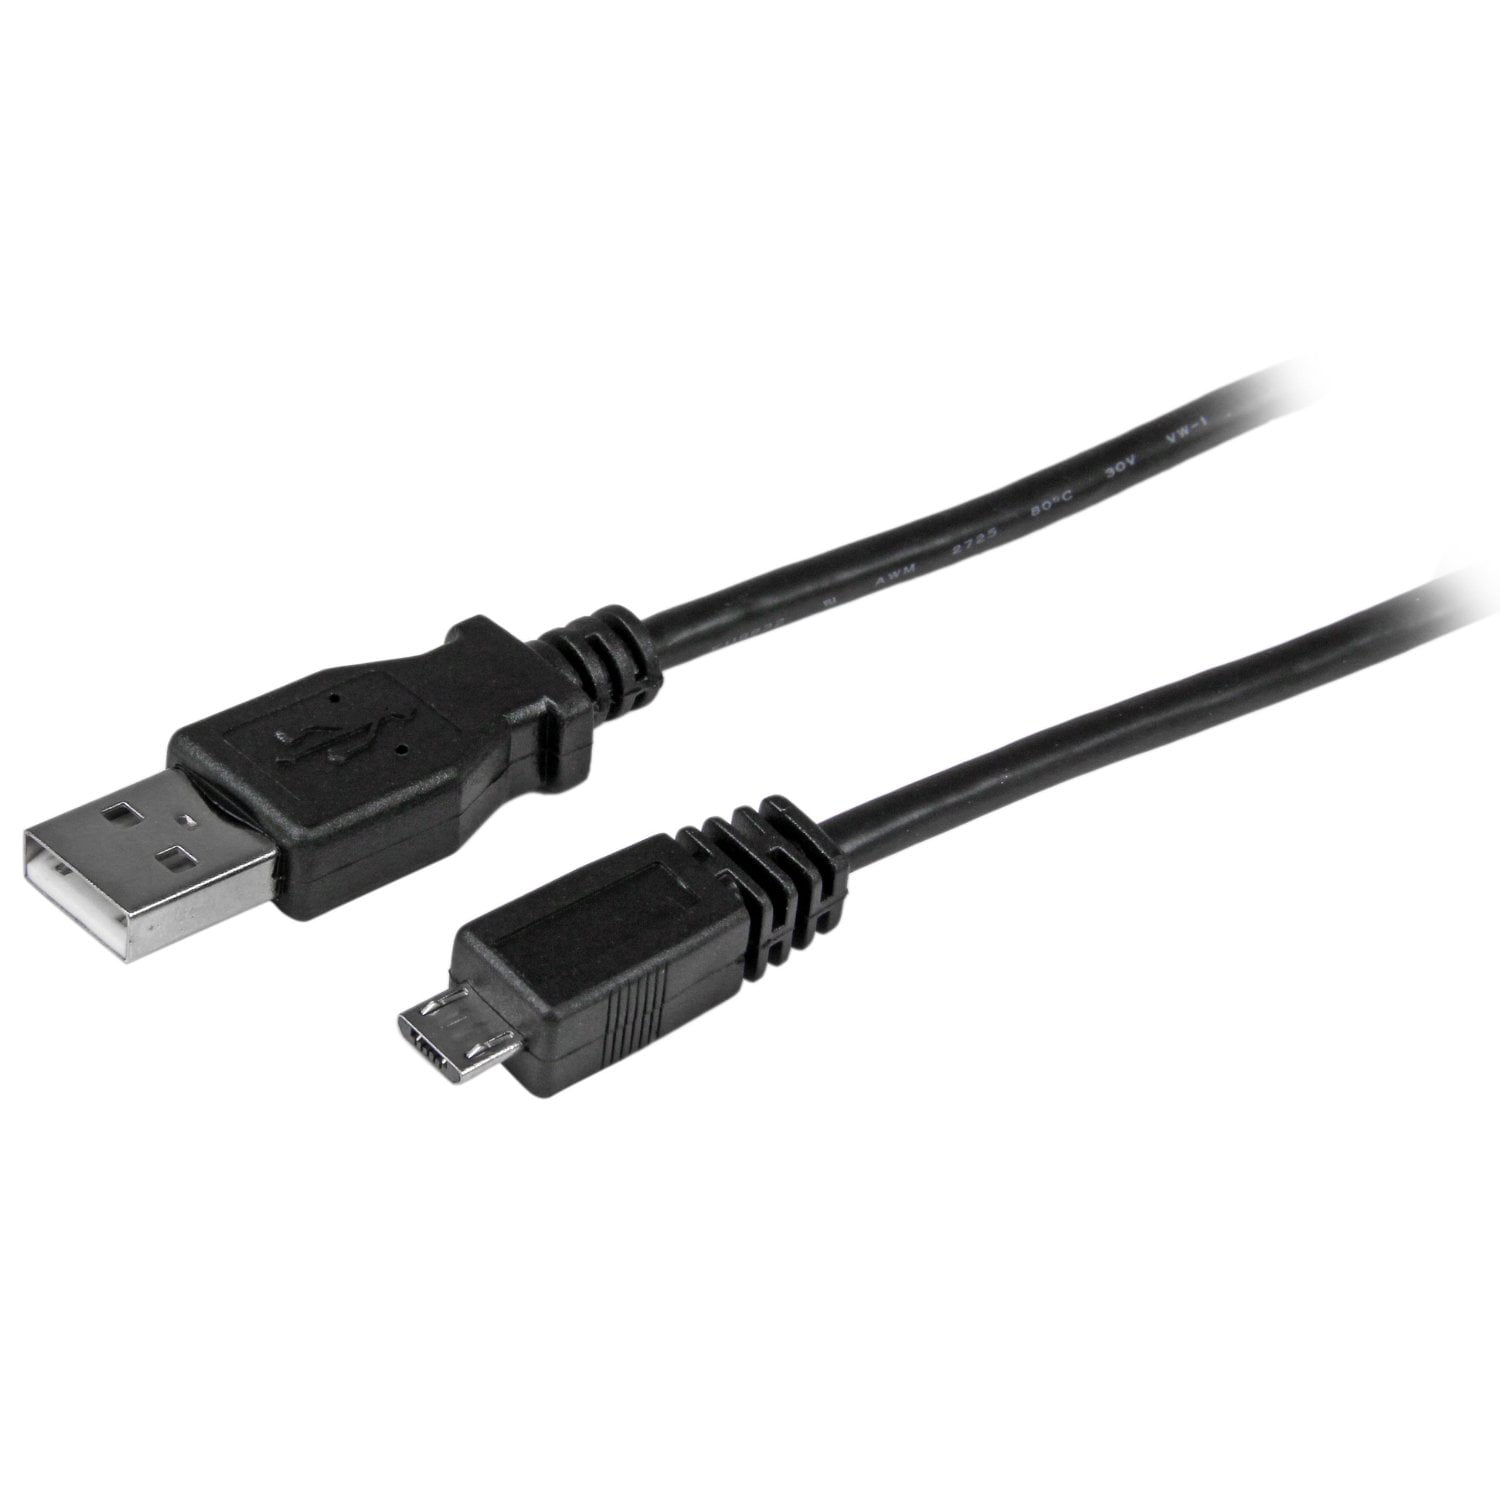 Rusland barndom klassisk PlayStation 4 DualShock 4 Controller Charging Cable, 10 foot, Black -  Walmart.com